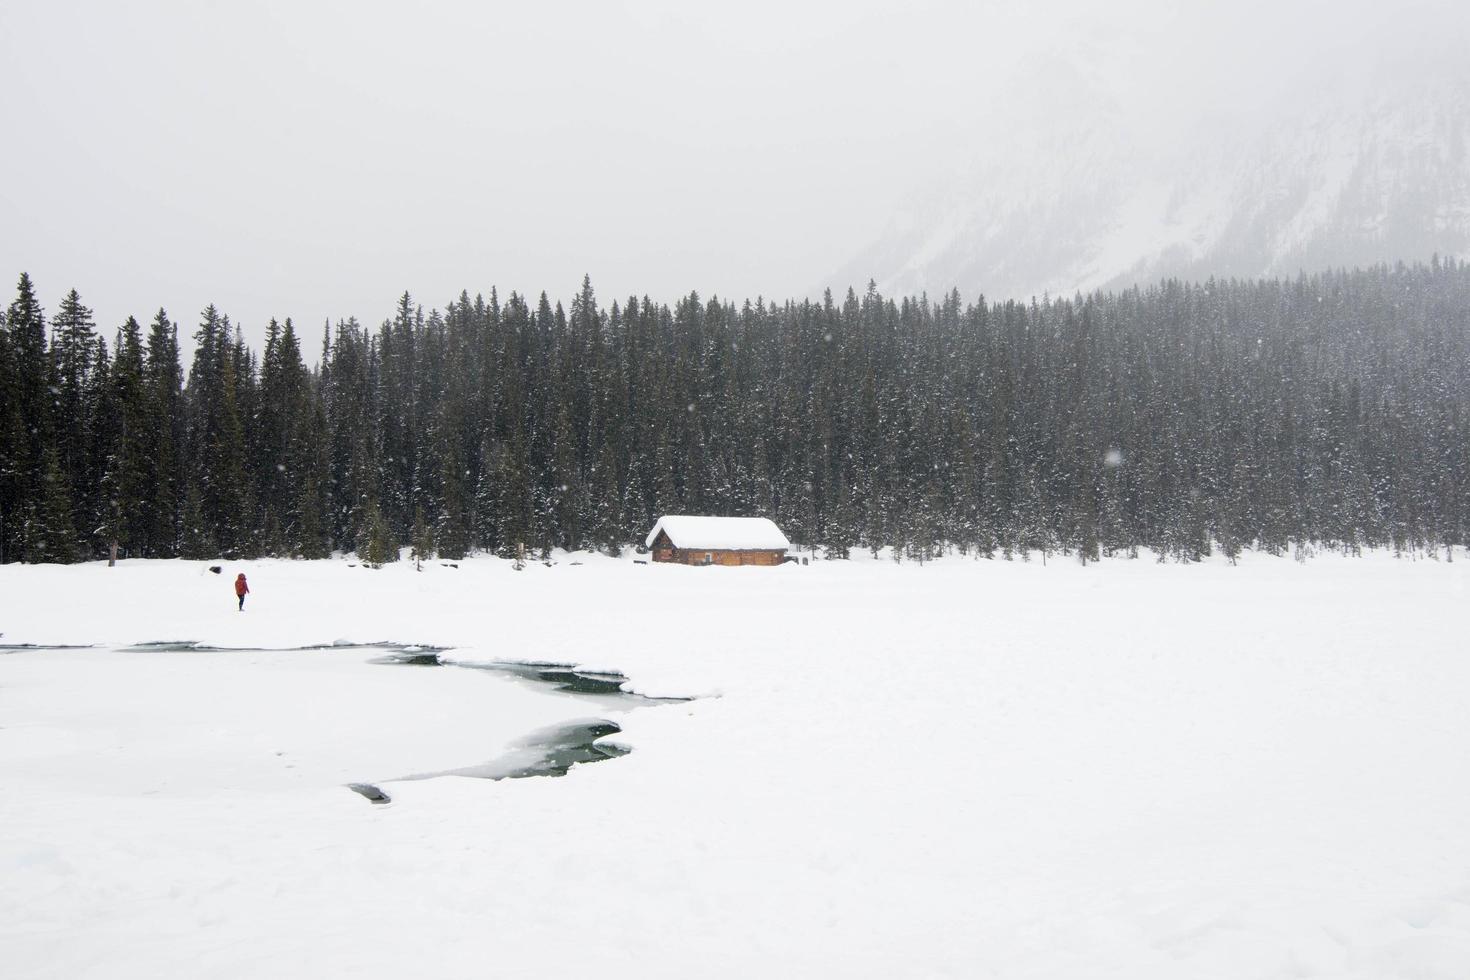 une personne vêtue de rouge dans un paysage hivernal. lac gelé, maison en bois et forêt sous la neige. parc national banff, canada photo